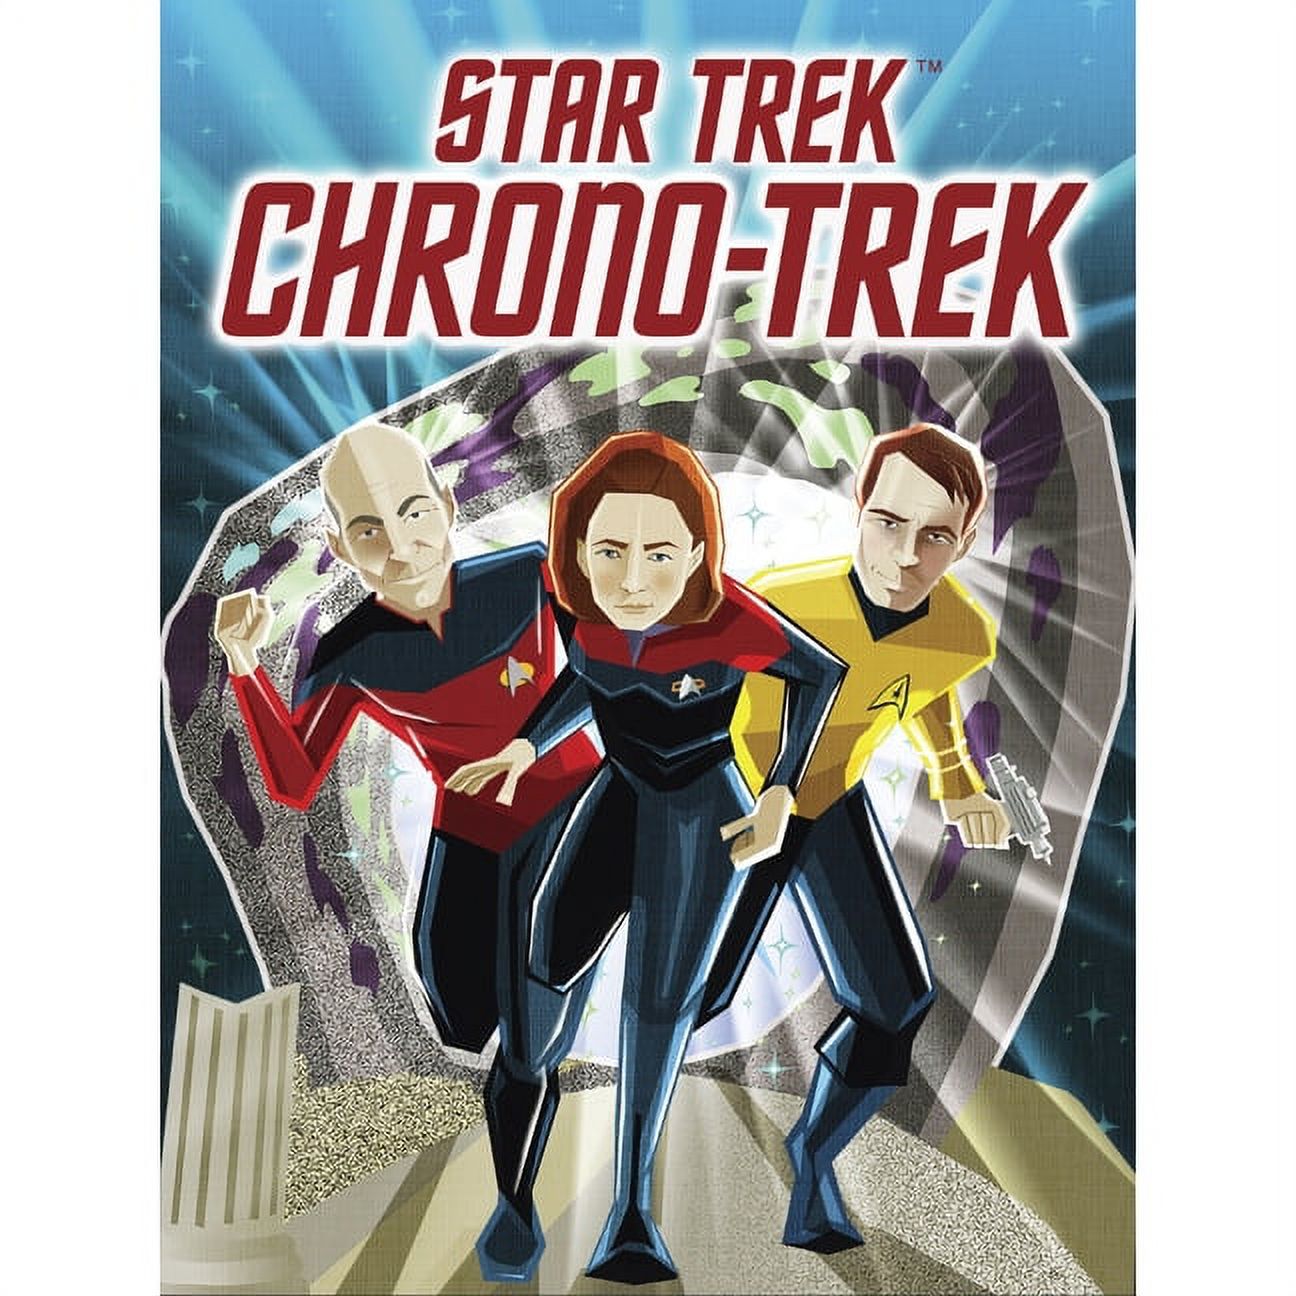 Star Trek Chrono-Trek (Other) - image 1 of 2